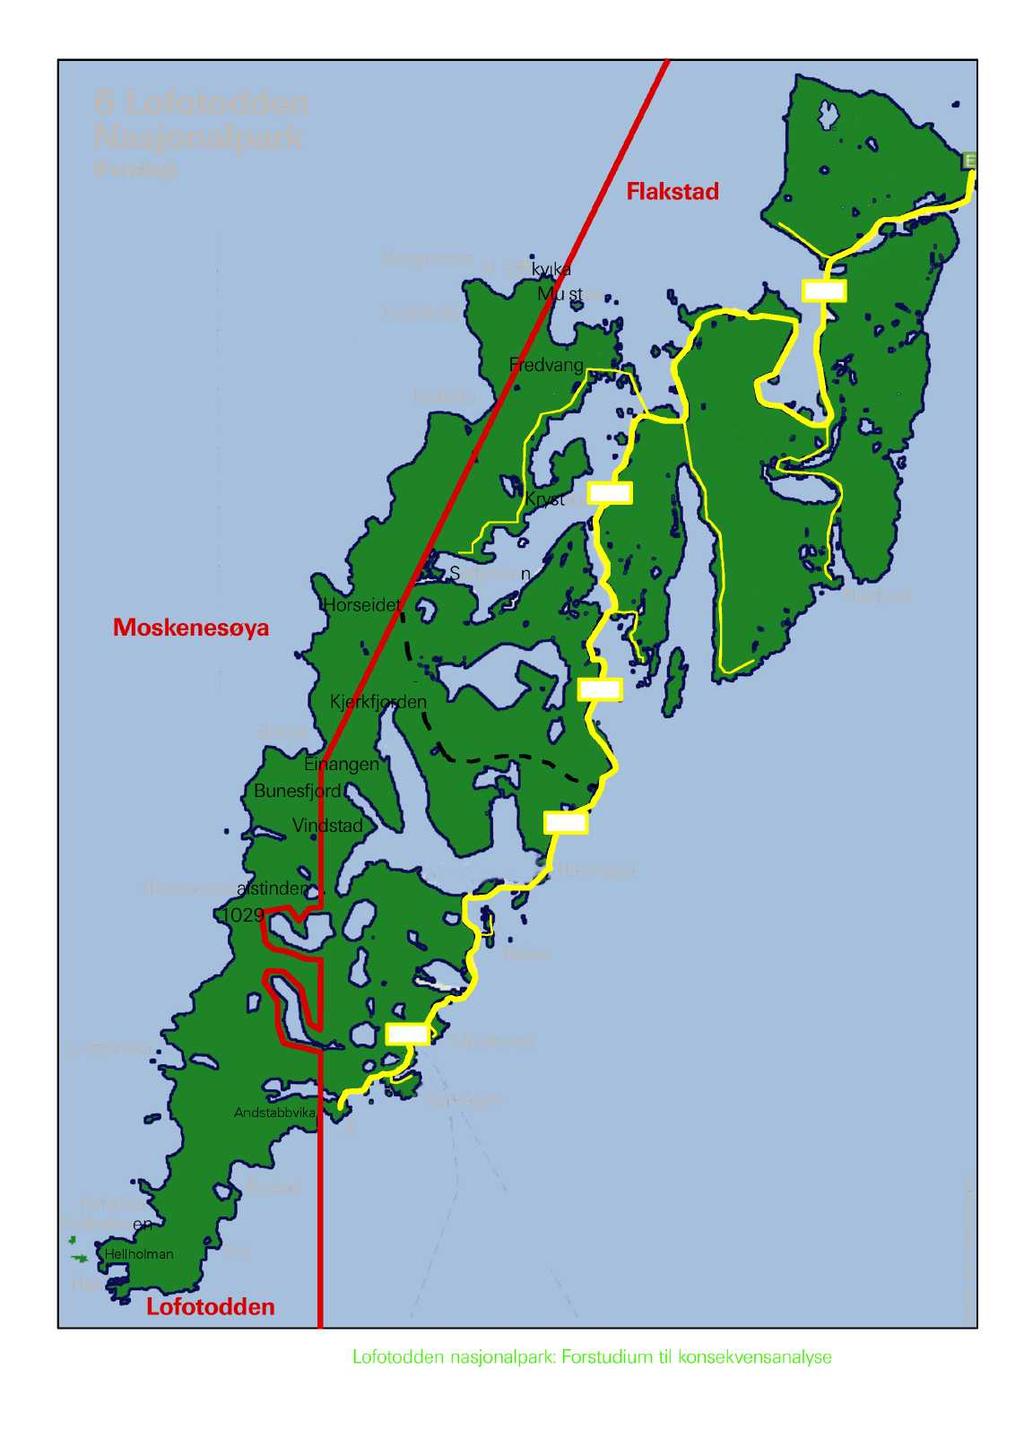 Vedlegg 1: Kart henta fra "Forstudium til konsekvensanalyse" av Ottar Schiøtz 6 Lofotodden Nasjonalpark (Forslag) Flakstad Bergsneset